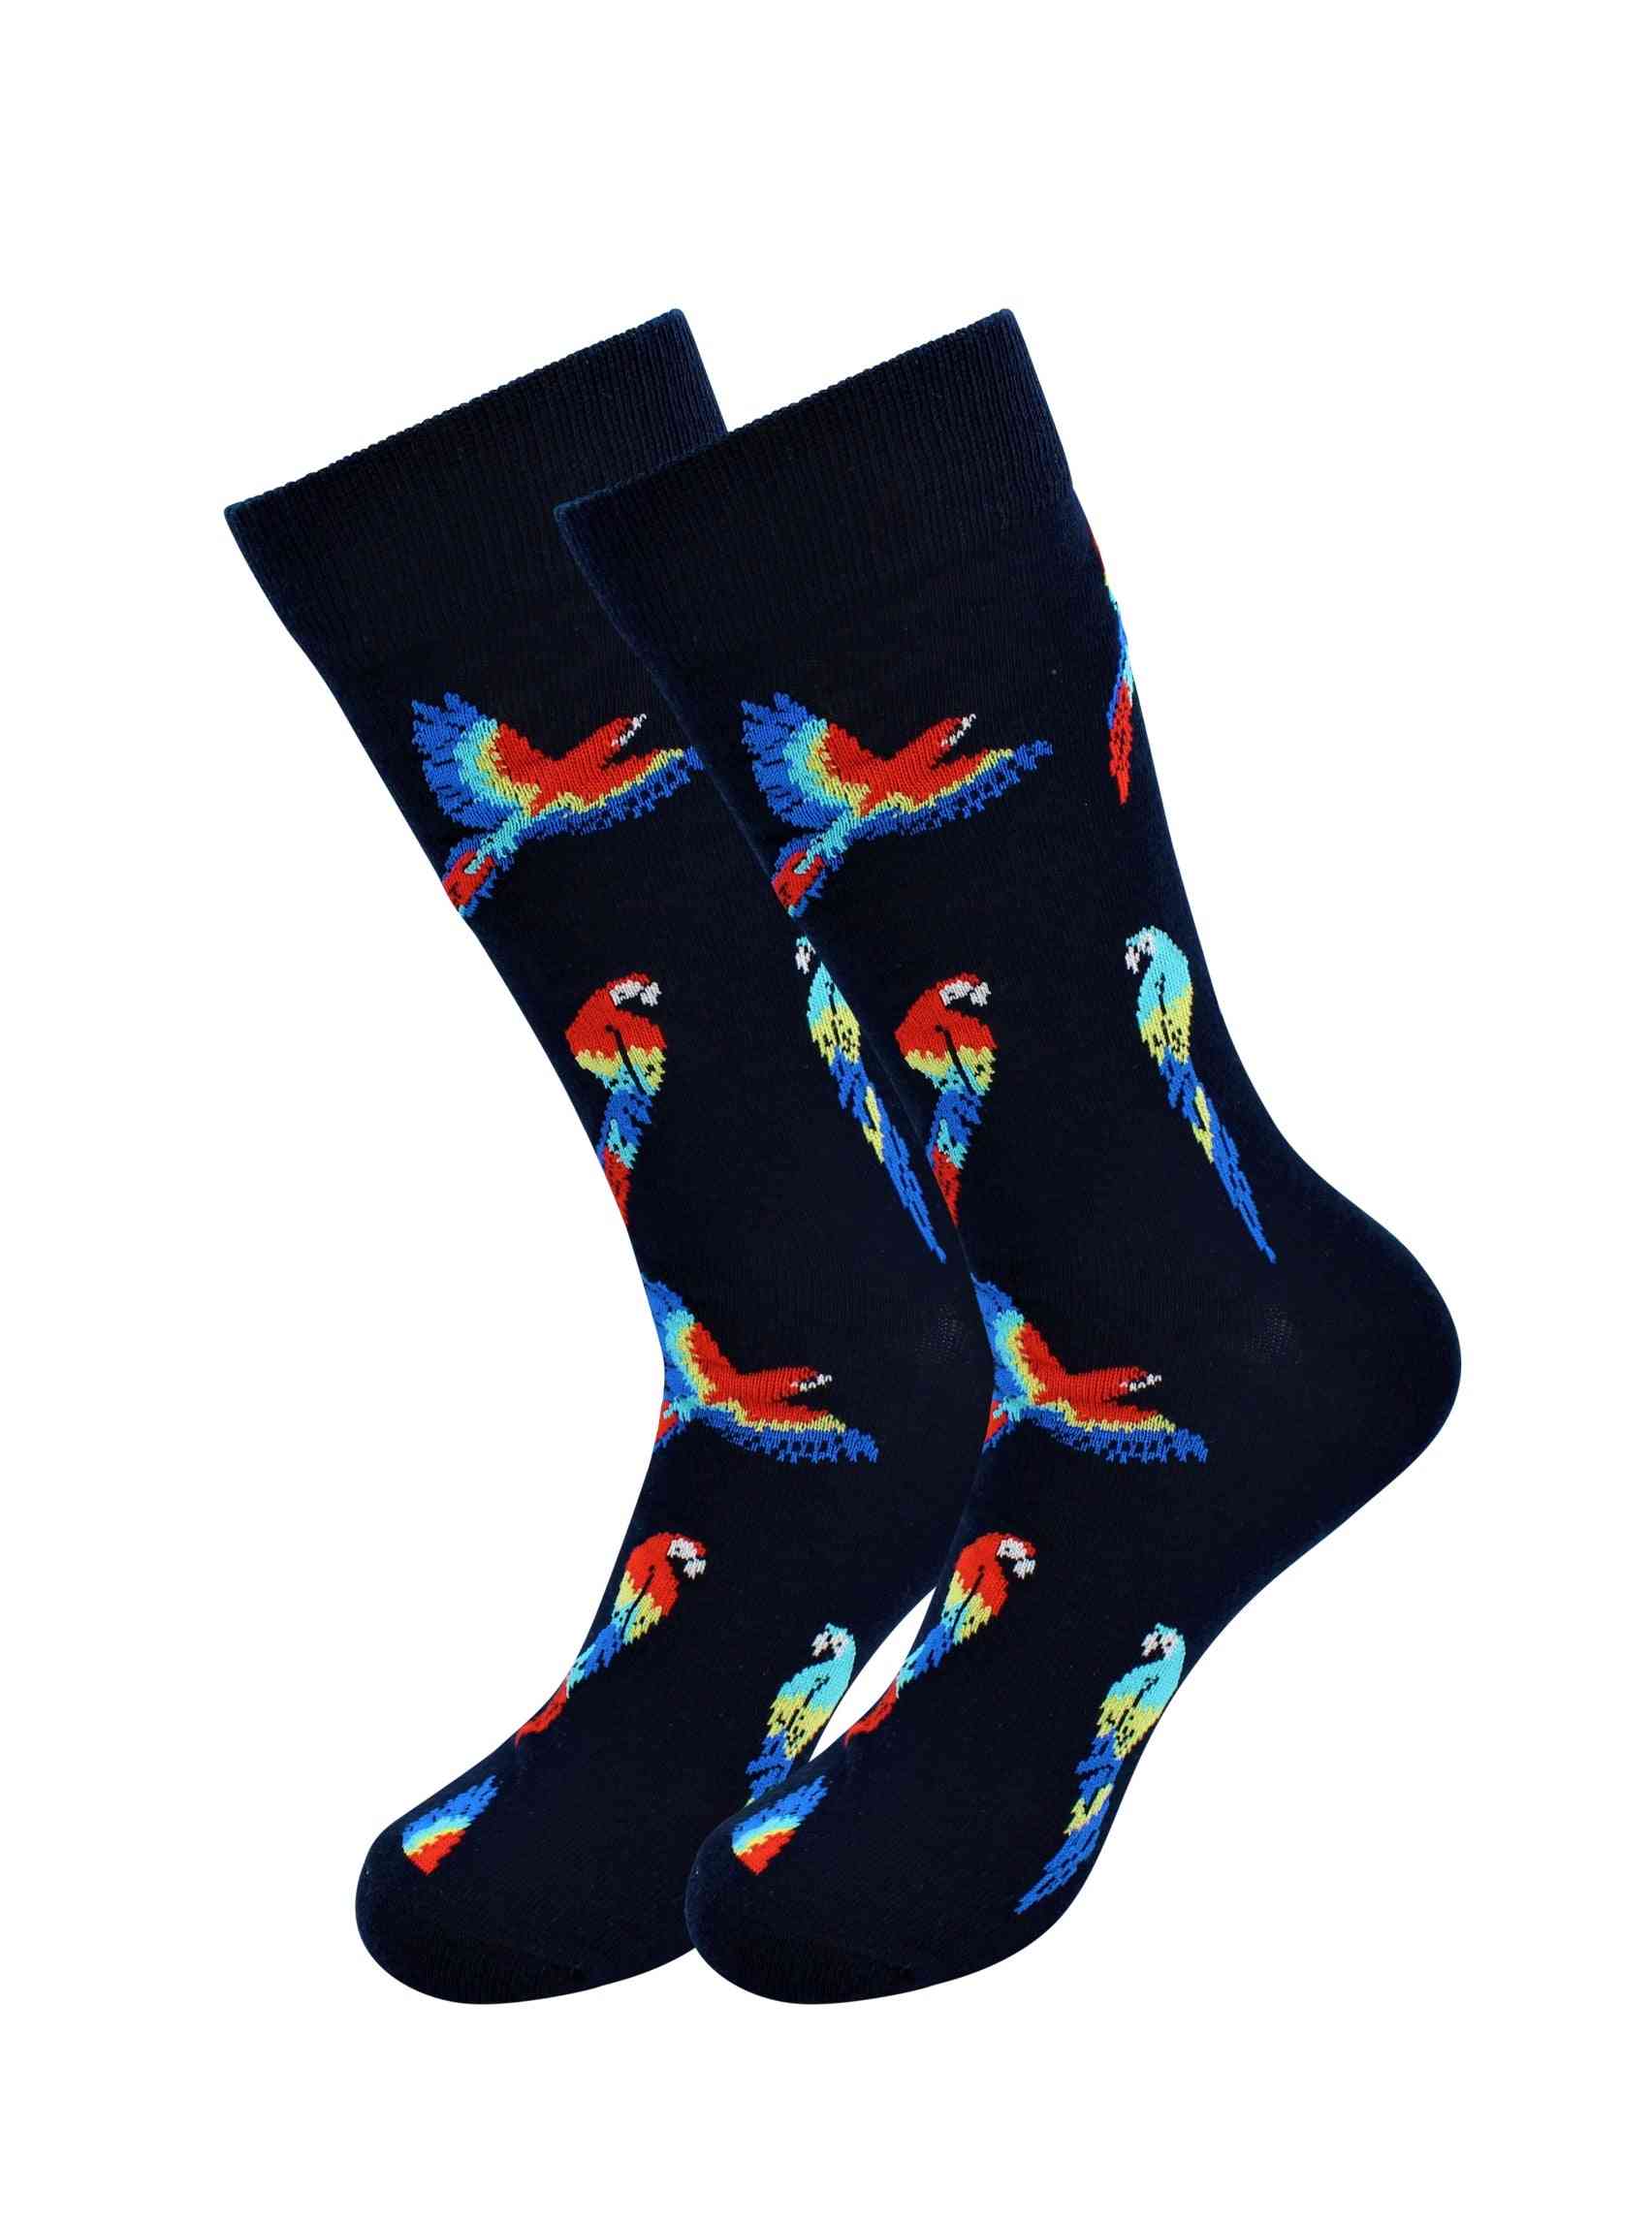 Kranke Socken Papageien entworfen